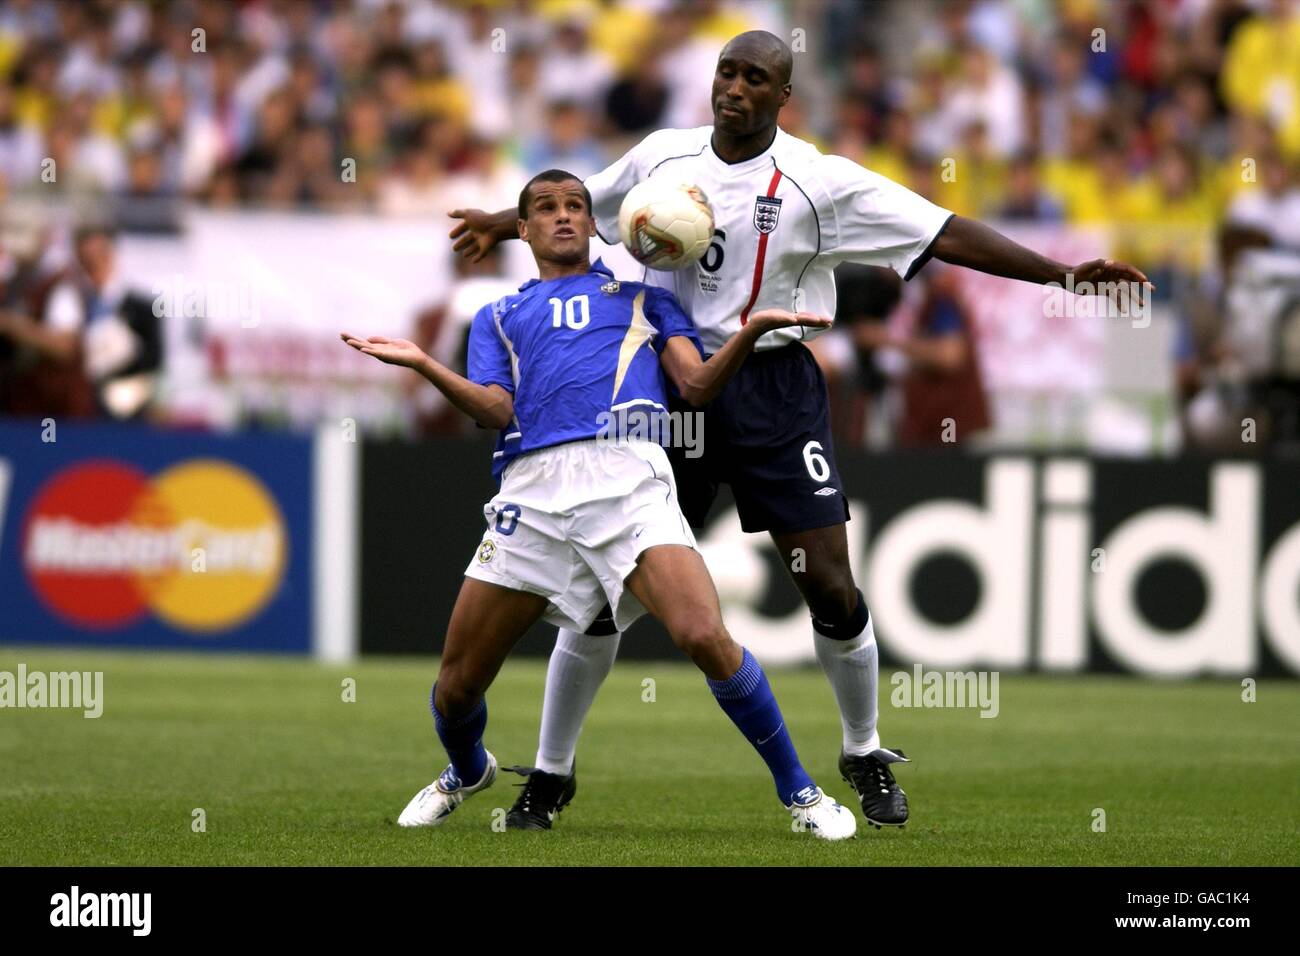 Rivaldo au Brésil protège le ballon contre sol Campbell en Angleterre Banque D'Images